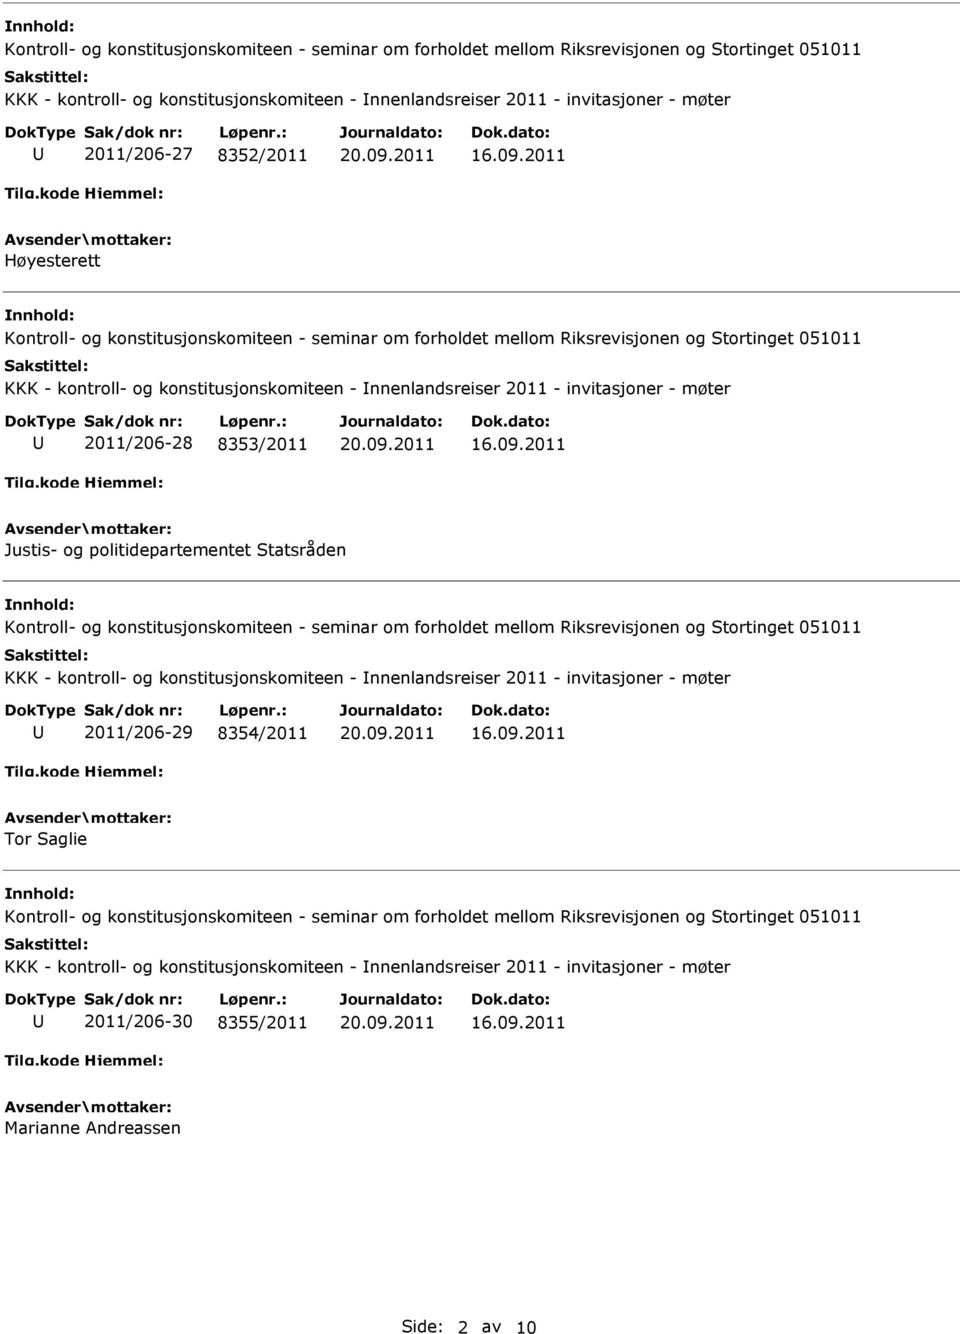 Statsråden KKK - kontroll- og konstitusjonskomiteen - nnenlandsreiser 2011 - invitasjoner - møter 2011/206-29 8354/2011 Tor Saglie